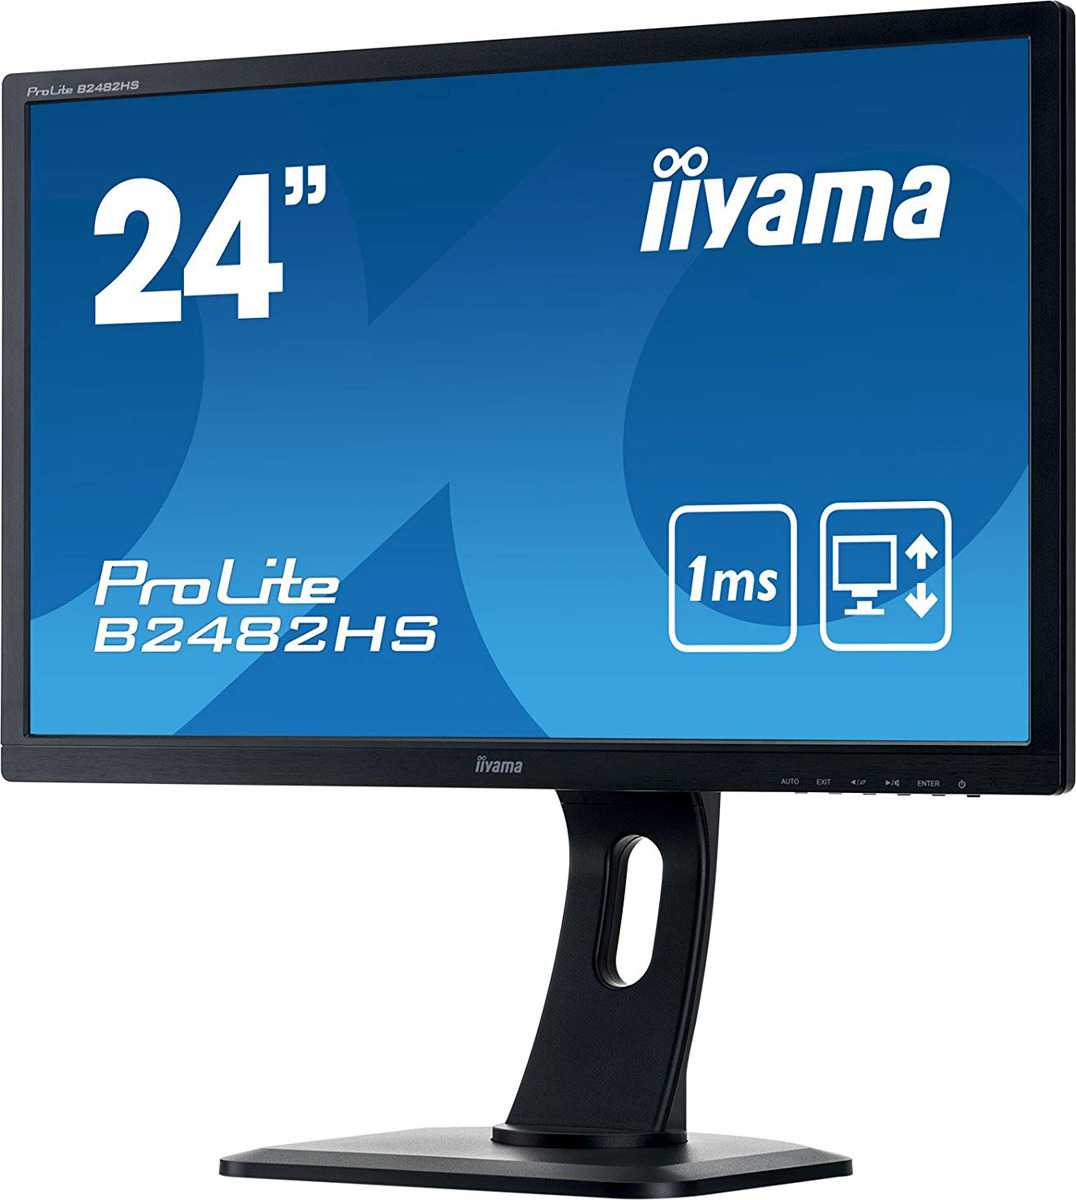 Монитор Iiyama ProLite E2482HSD-1 - подробные характеристики обзоры видео фото Цены в интернет-магазинах где можно купить монитор Iiyama ProLite E2482HSD-1